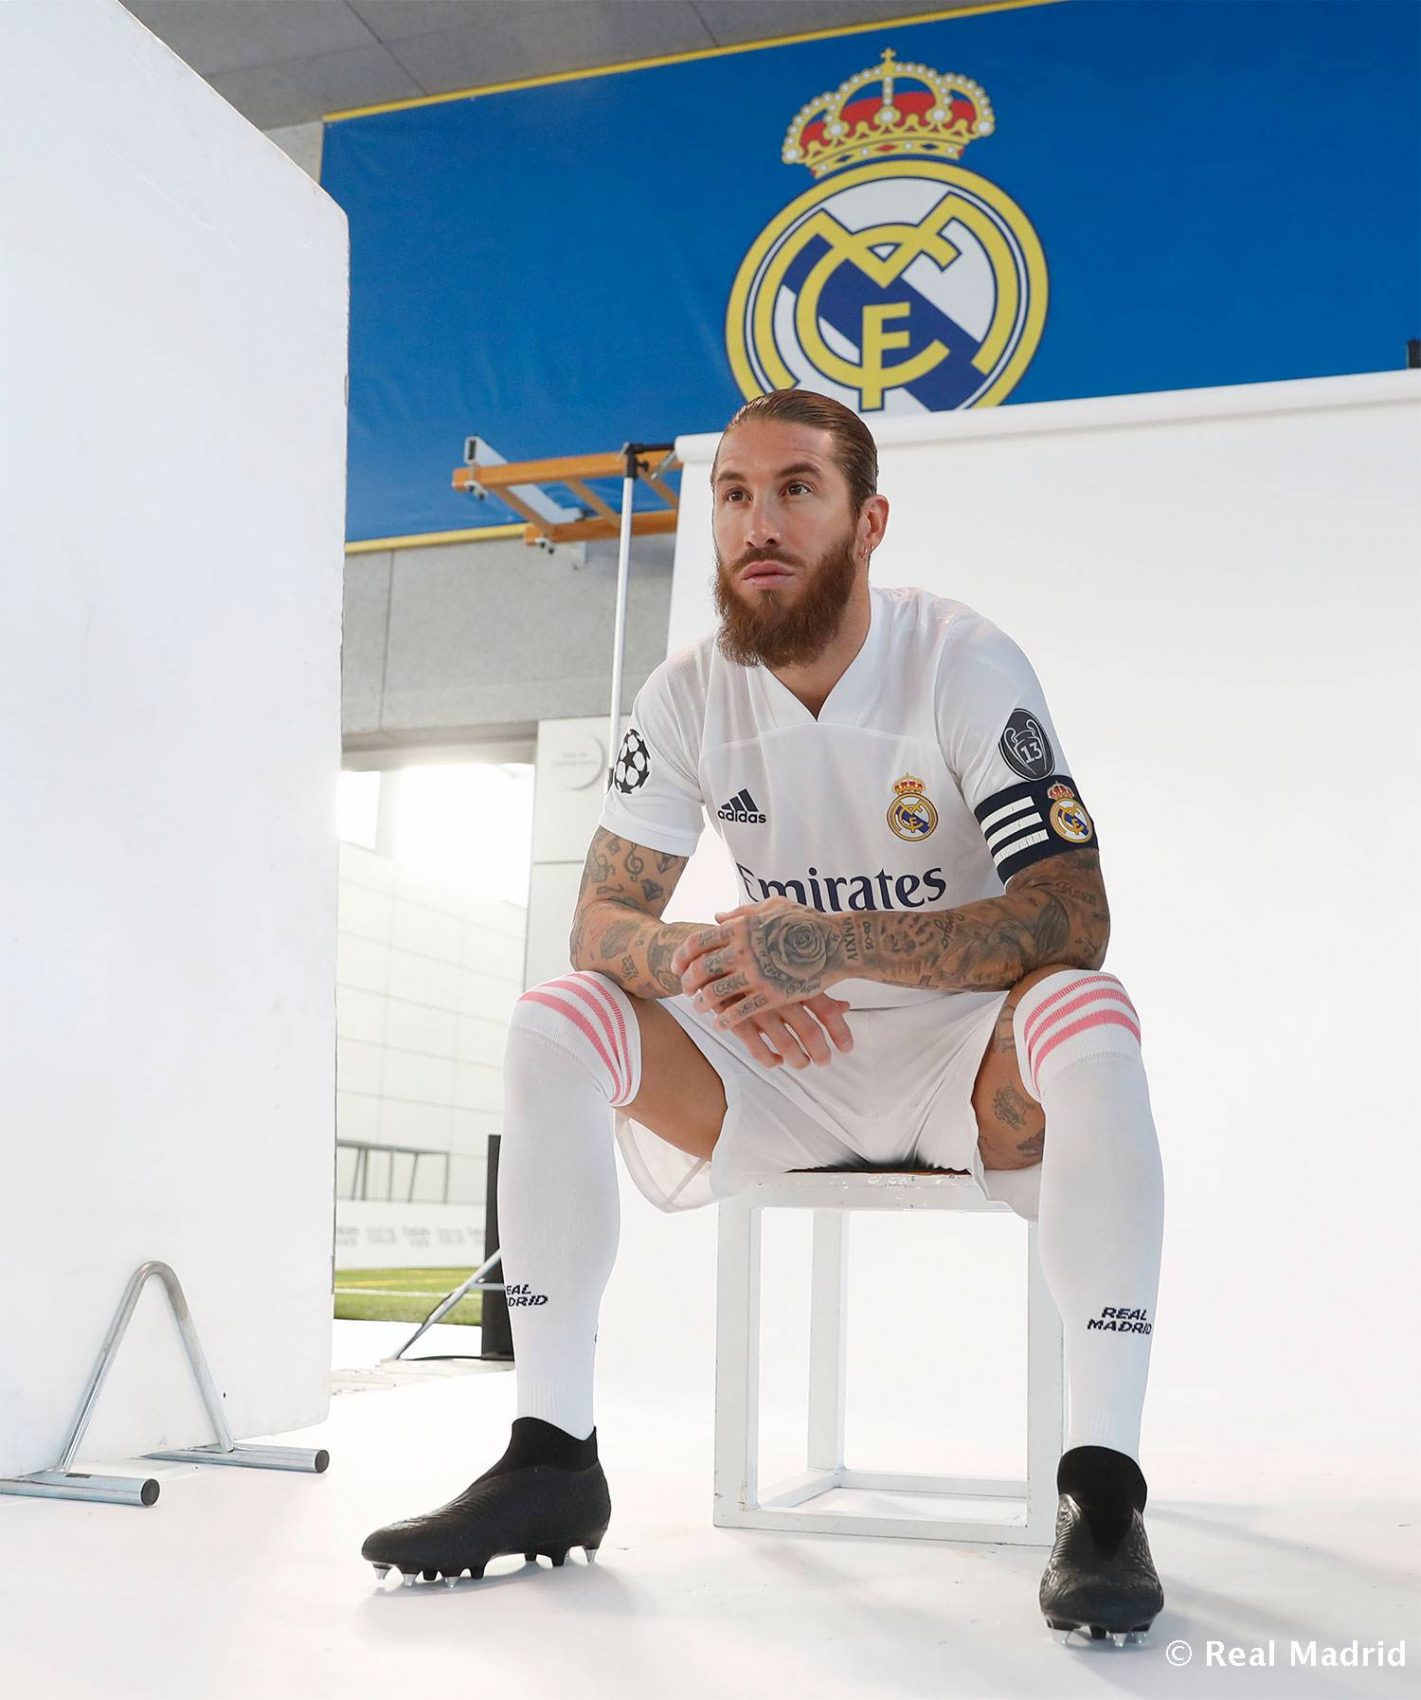 Daylight Studios | Fotos oficiales del Real Madrid para la temporada 2020-21